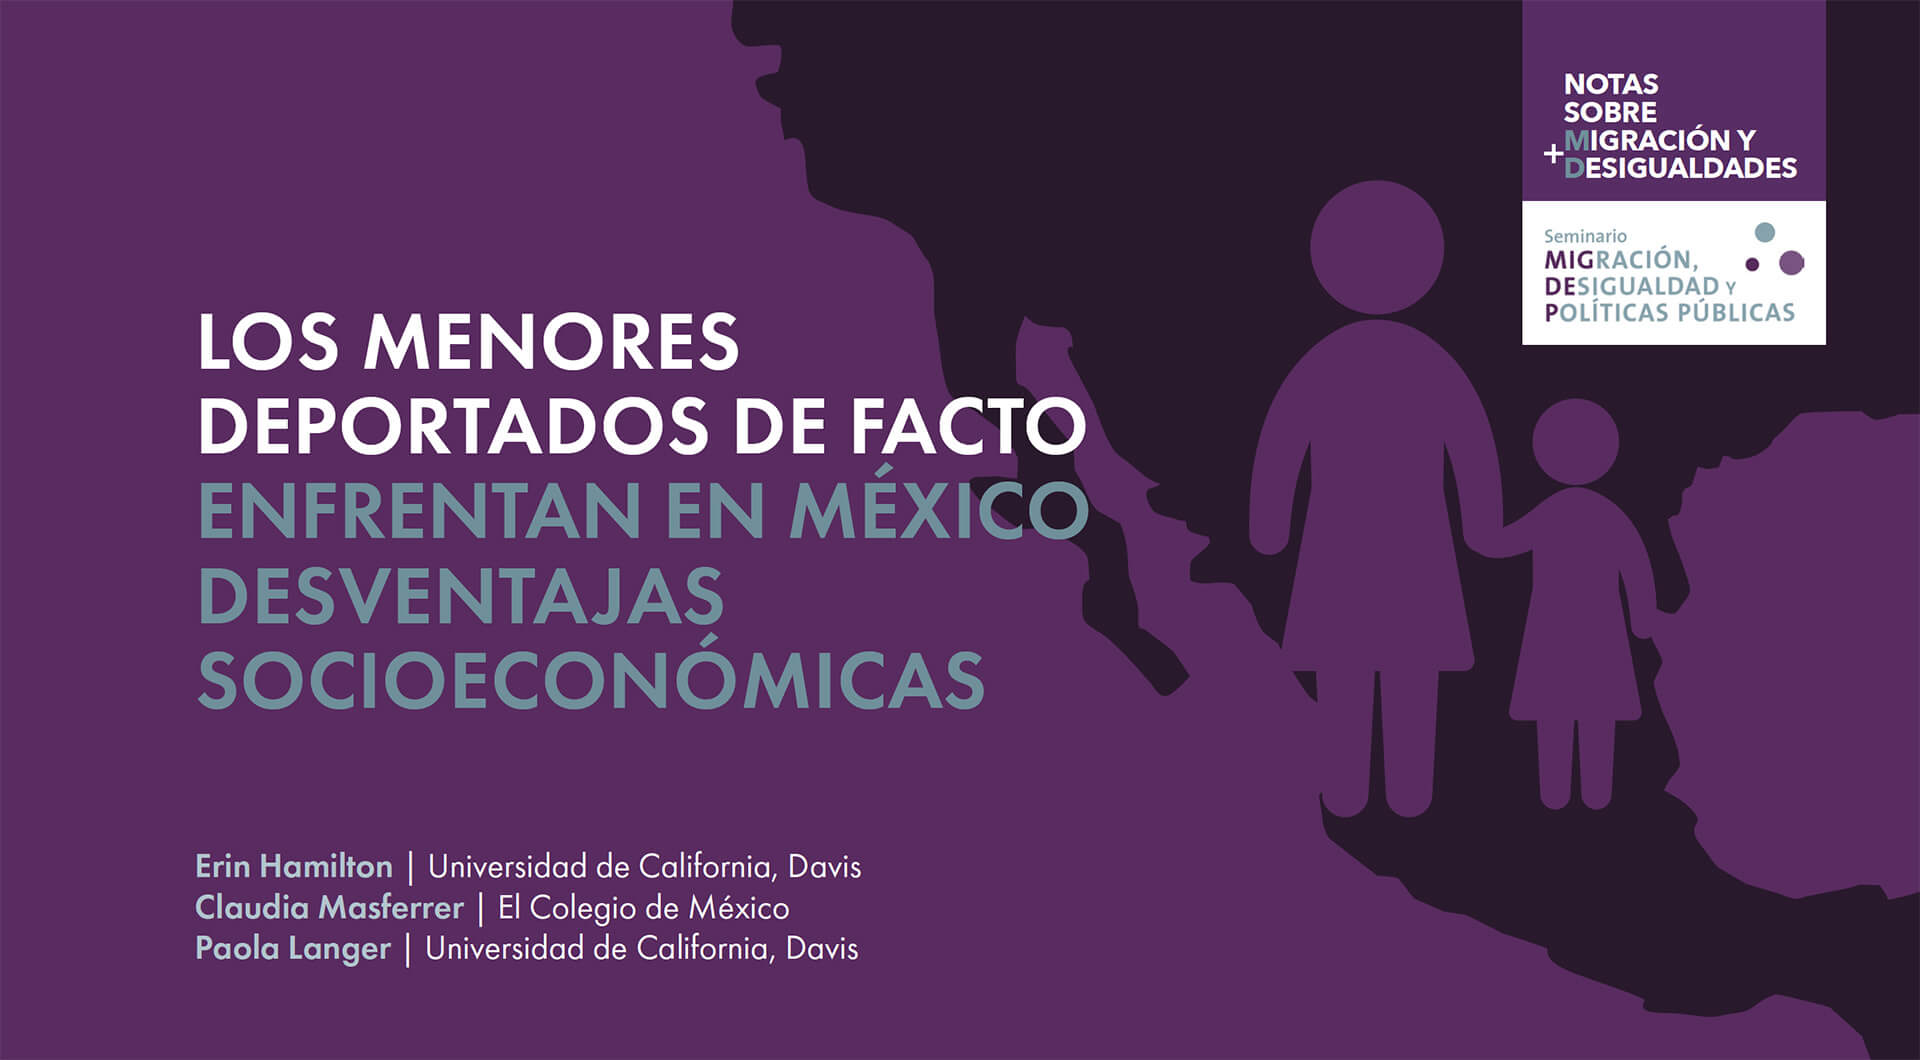 Los menores deportados de facto enfrentan en México desventajas socioeconómicas